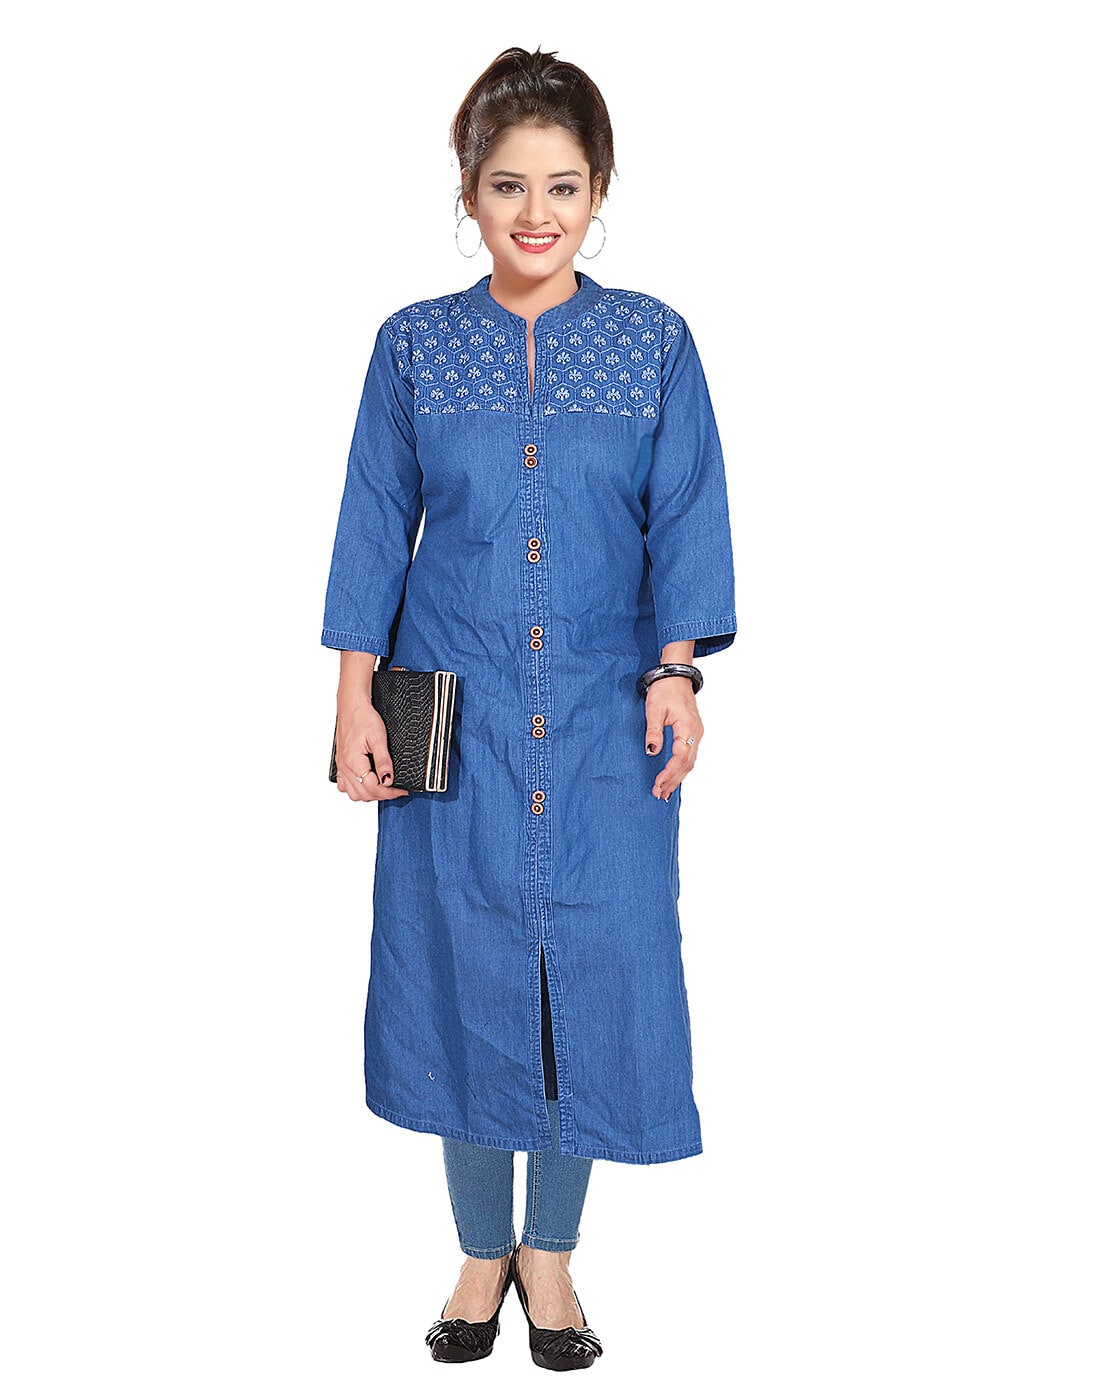 Women's Blue Denim Cotton Wonderful Designer Kurtis - PRFASHION - 3003430